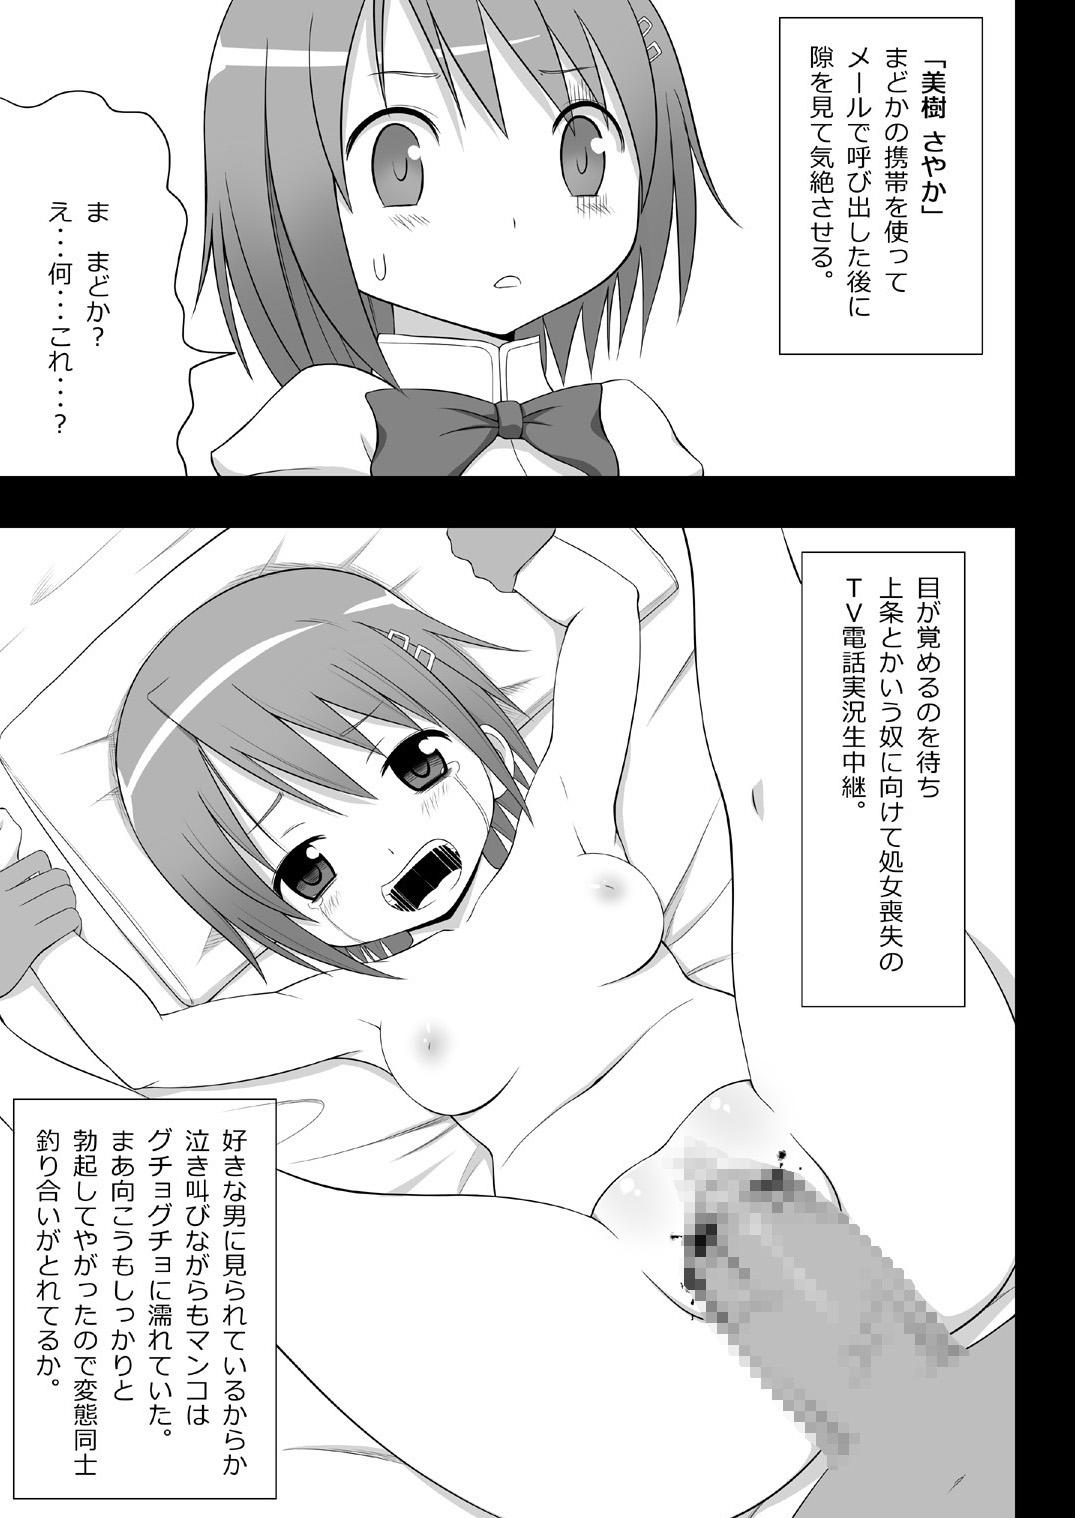 Culona Jitsuroku Rape "Watashitachi ga Shoujo Janaku Natta hi" - Puella magi madoka magica Gay Money - Page 4